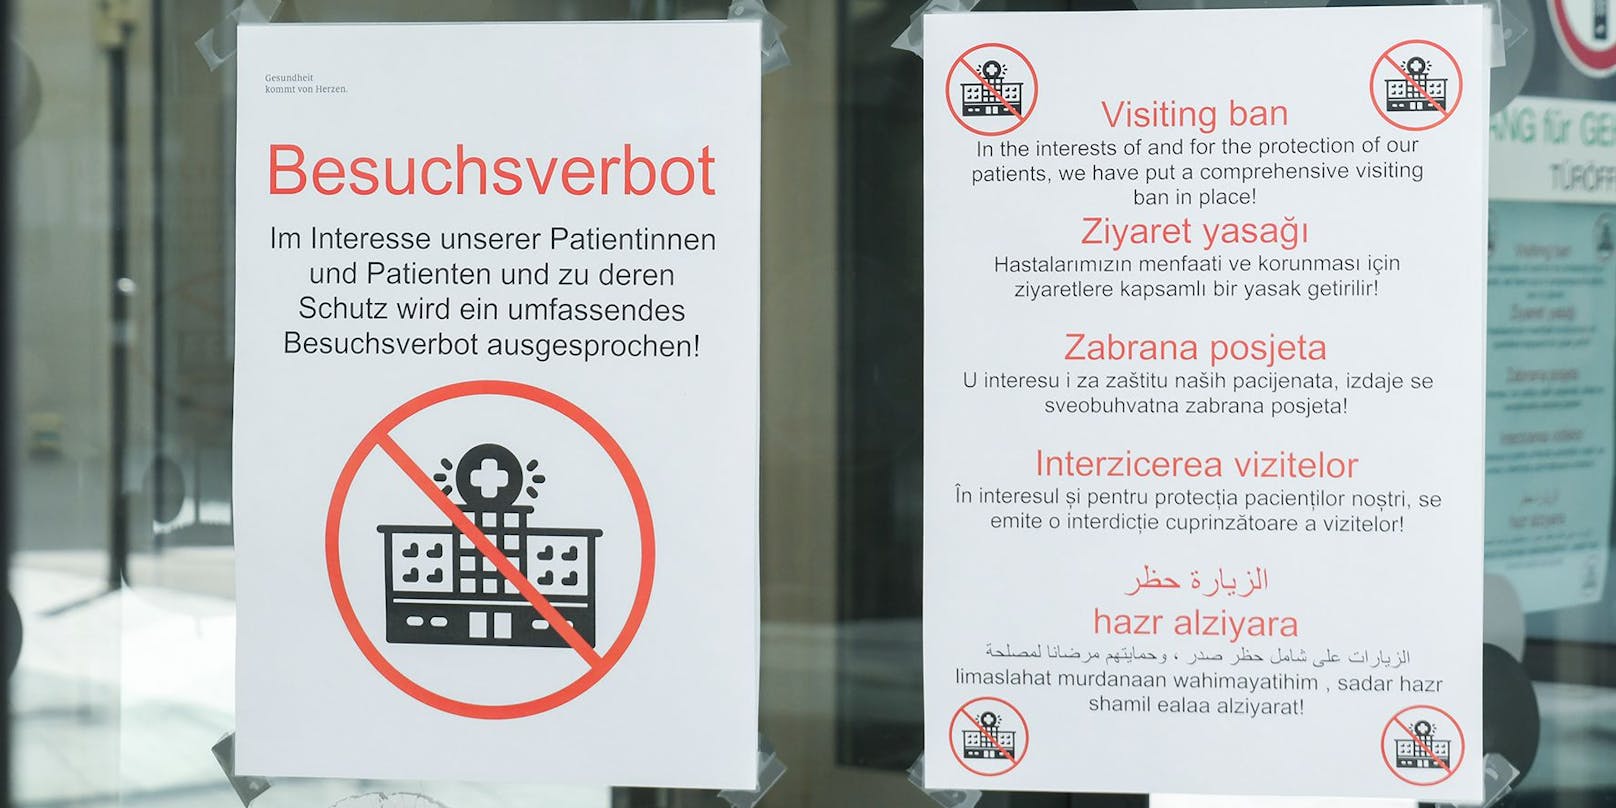 Aufgrund der steigenden Corona-Infektionszahlen herrscht in den Tiroler Krankenhäusern ab sofort wieder ein generelles Besuchsverbot.